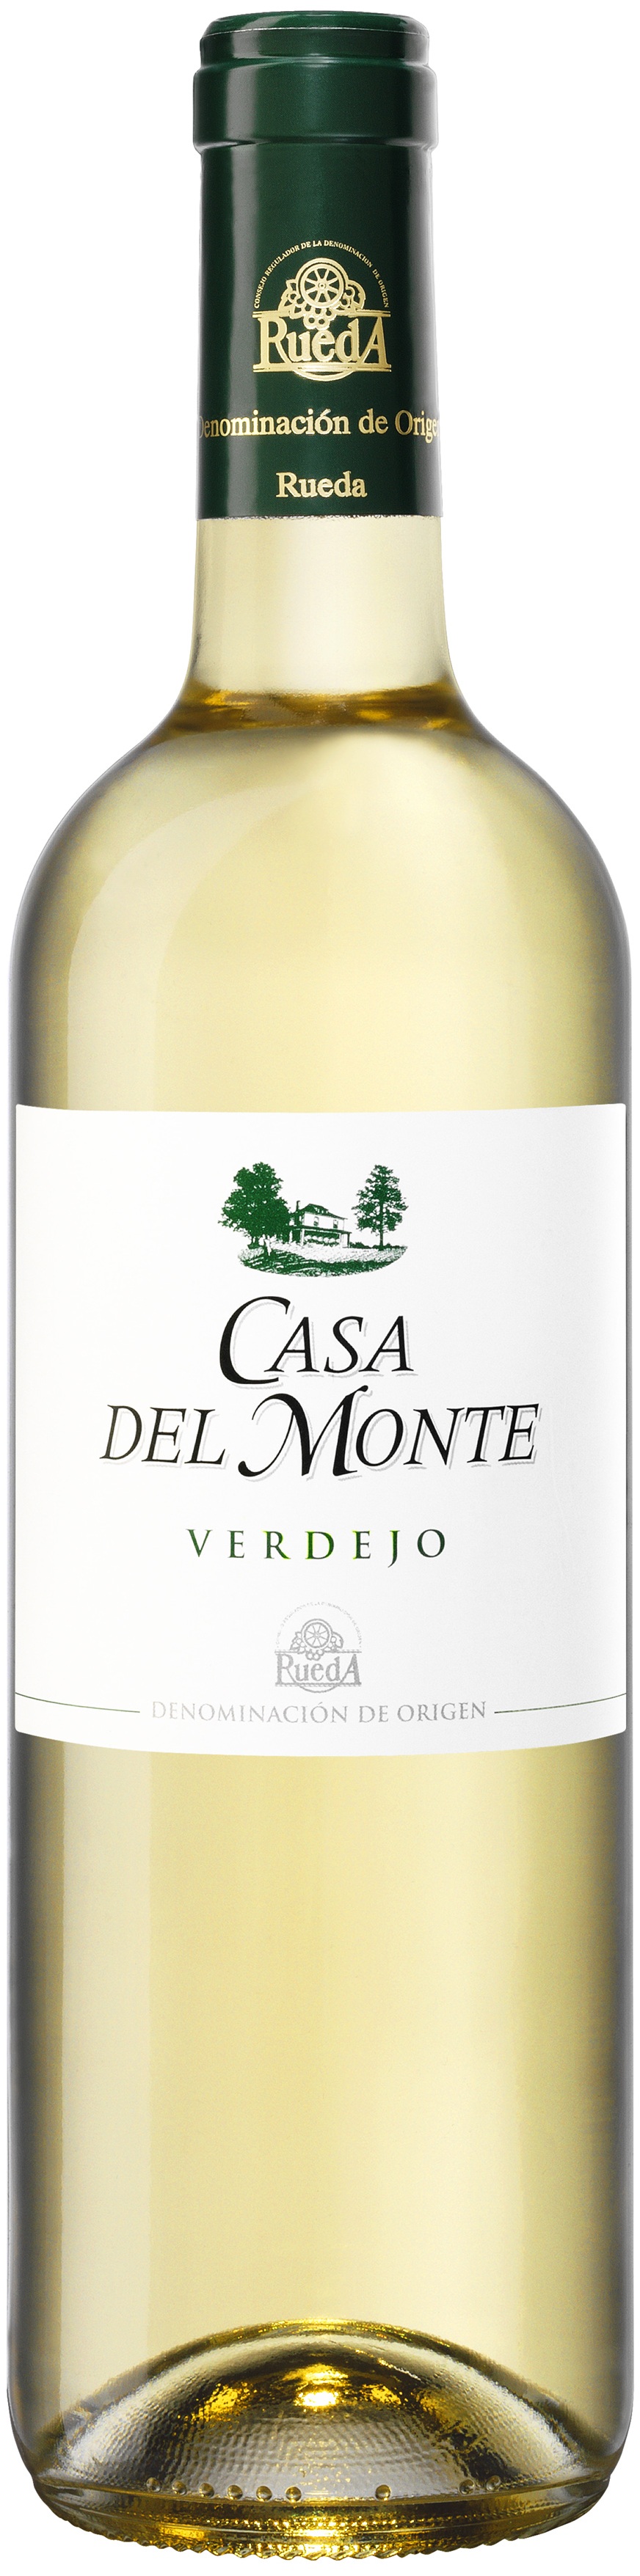 Imagen de la botella de Vino Casa del Monte Verdejo